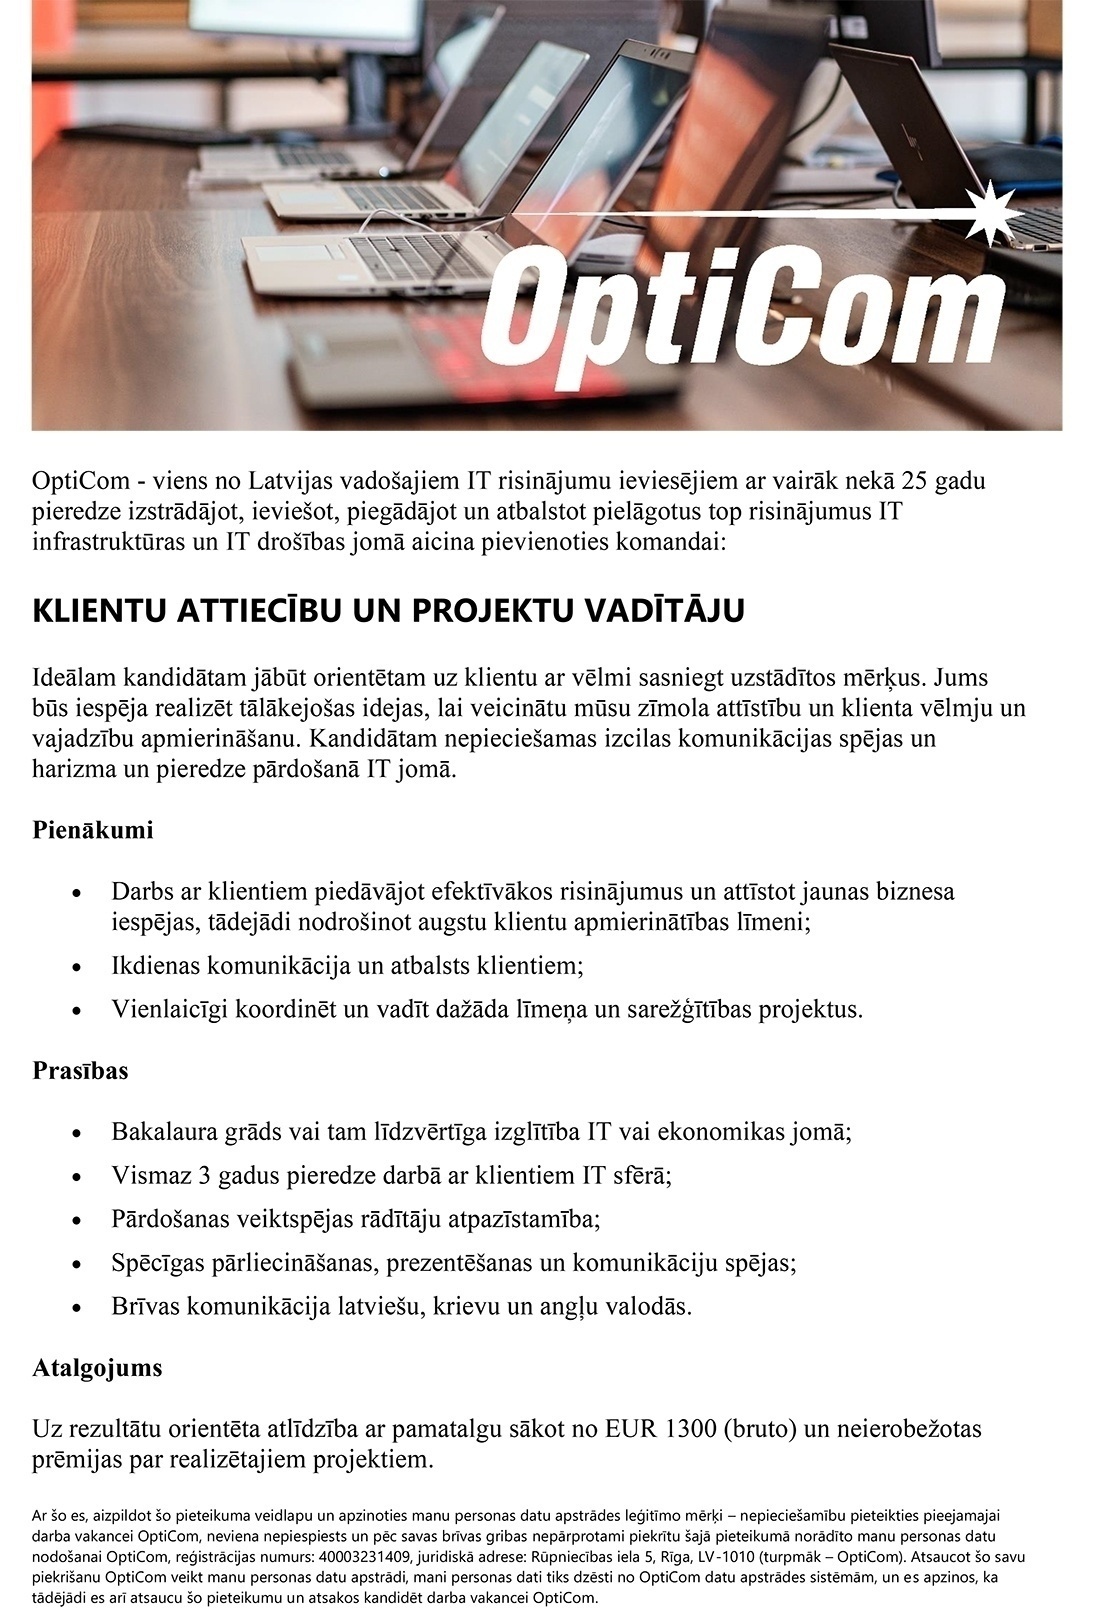 OptiCom, SIA Klientu attiecību un projektu vadītājs/-a